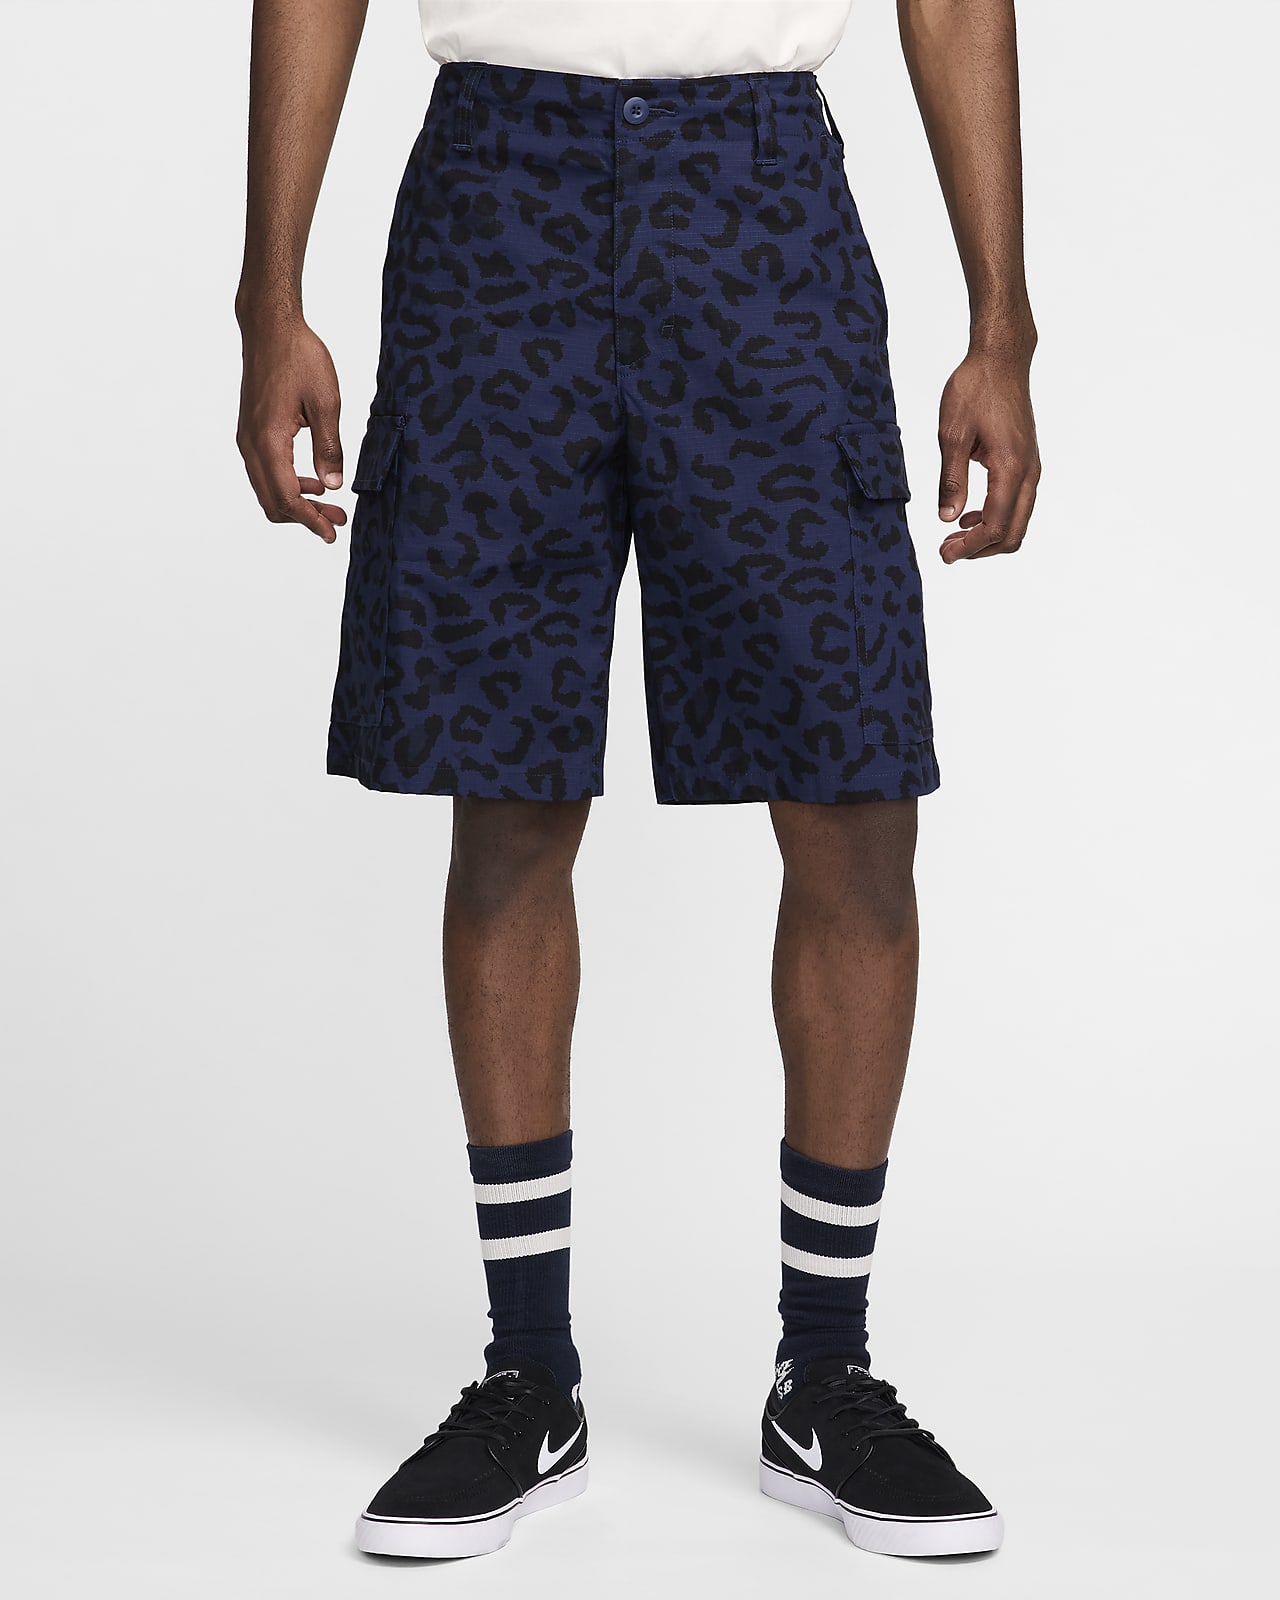 Shorts estampados para hombre Nike SB Kearny